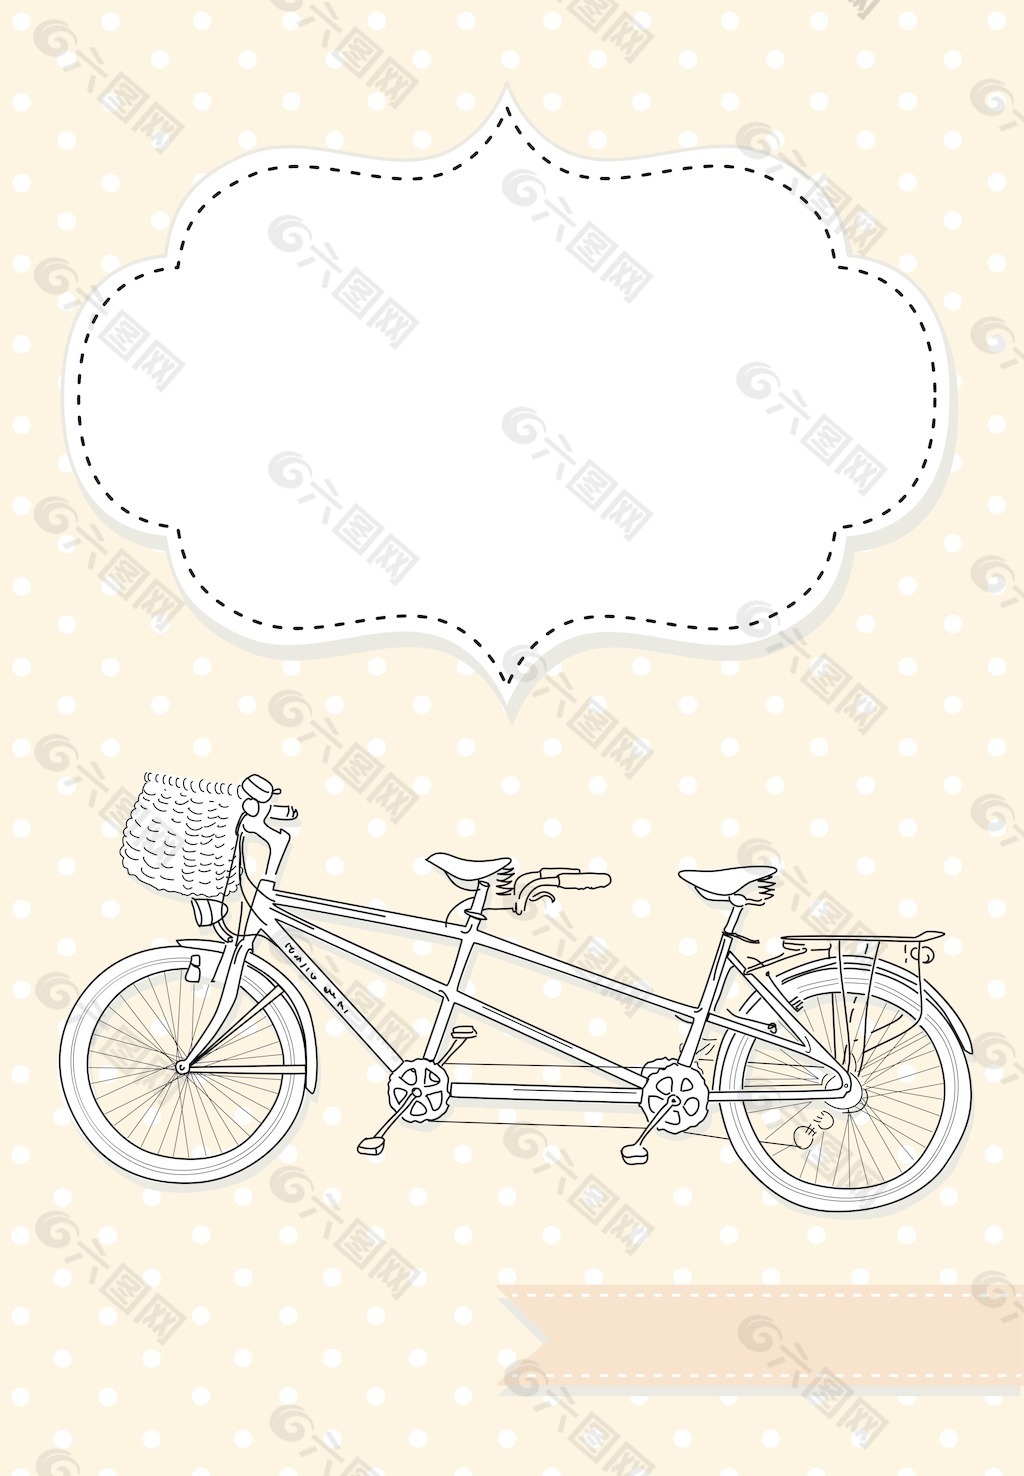 双人自行车婚礼邀请圆点背景